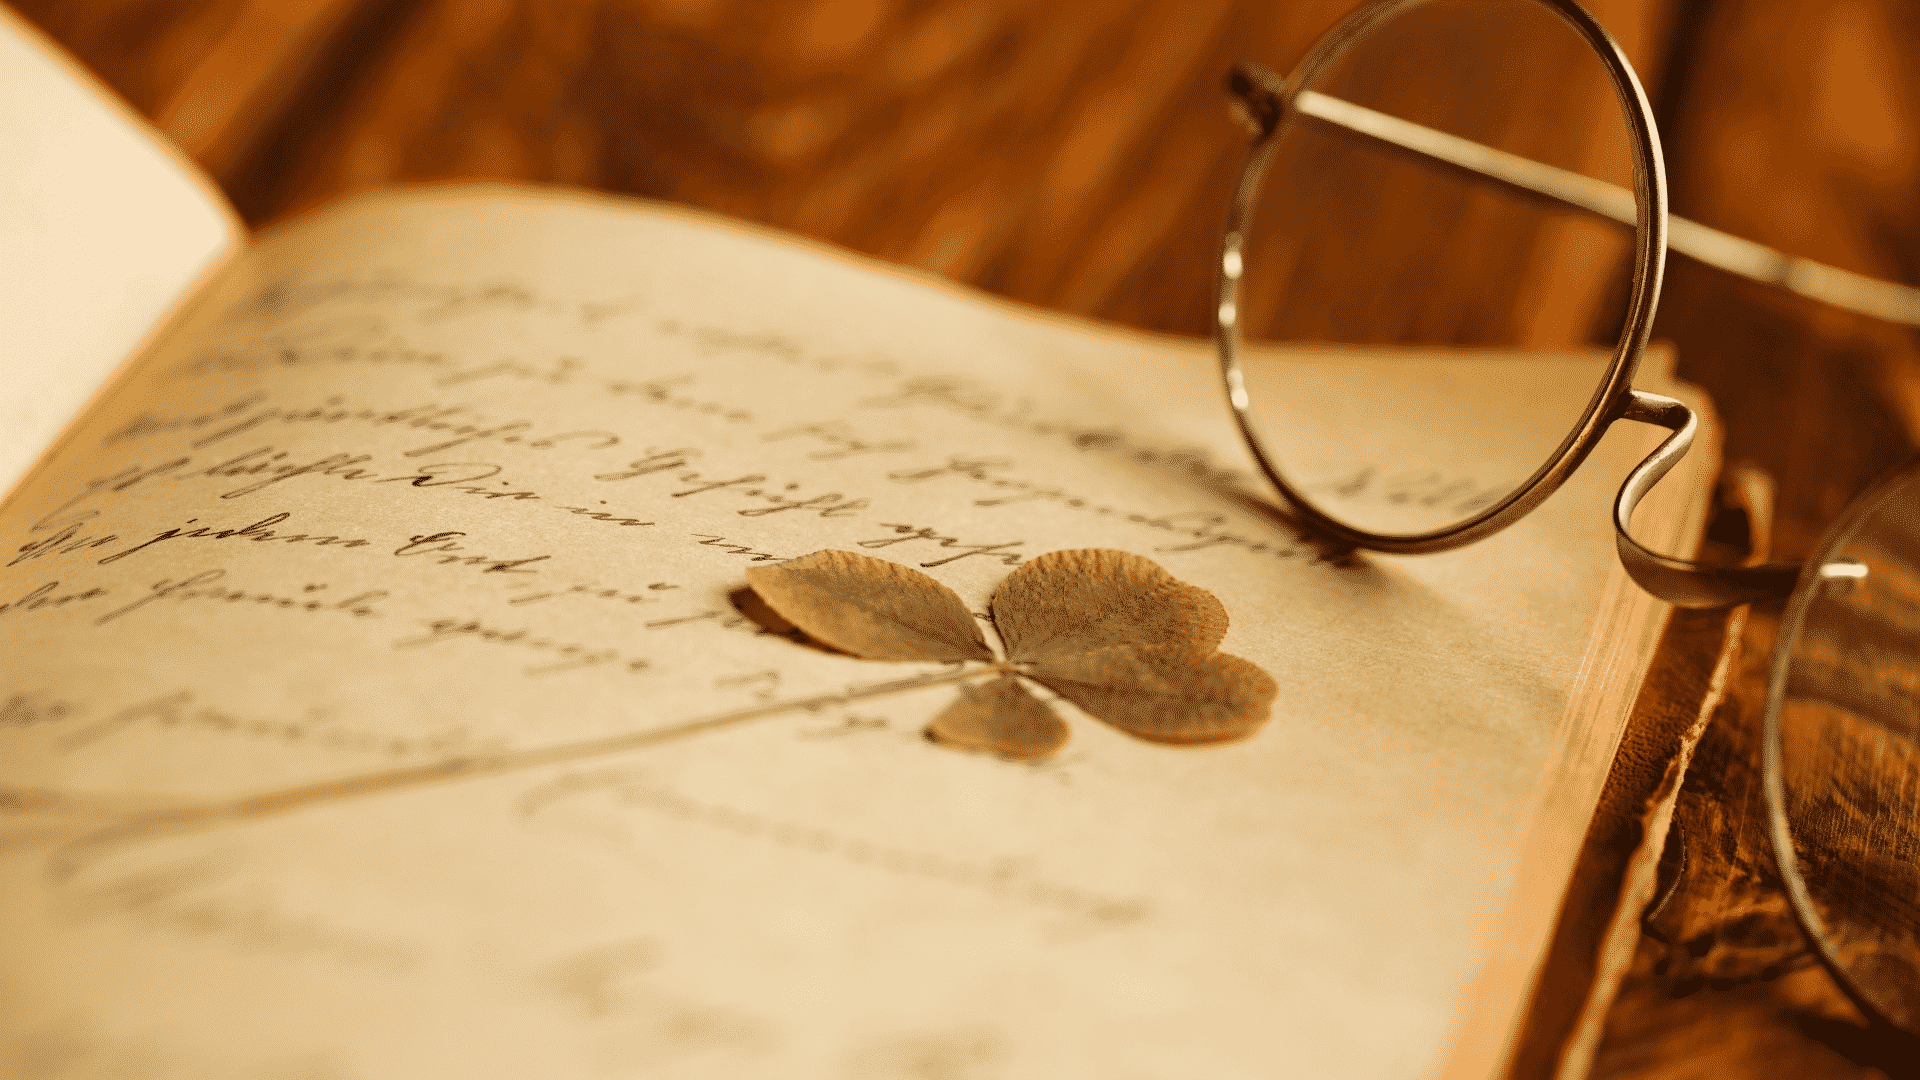 Paginas abertas de um livro de poesias com um óculos sobre ele